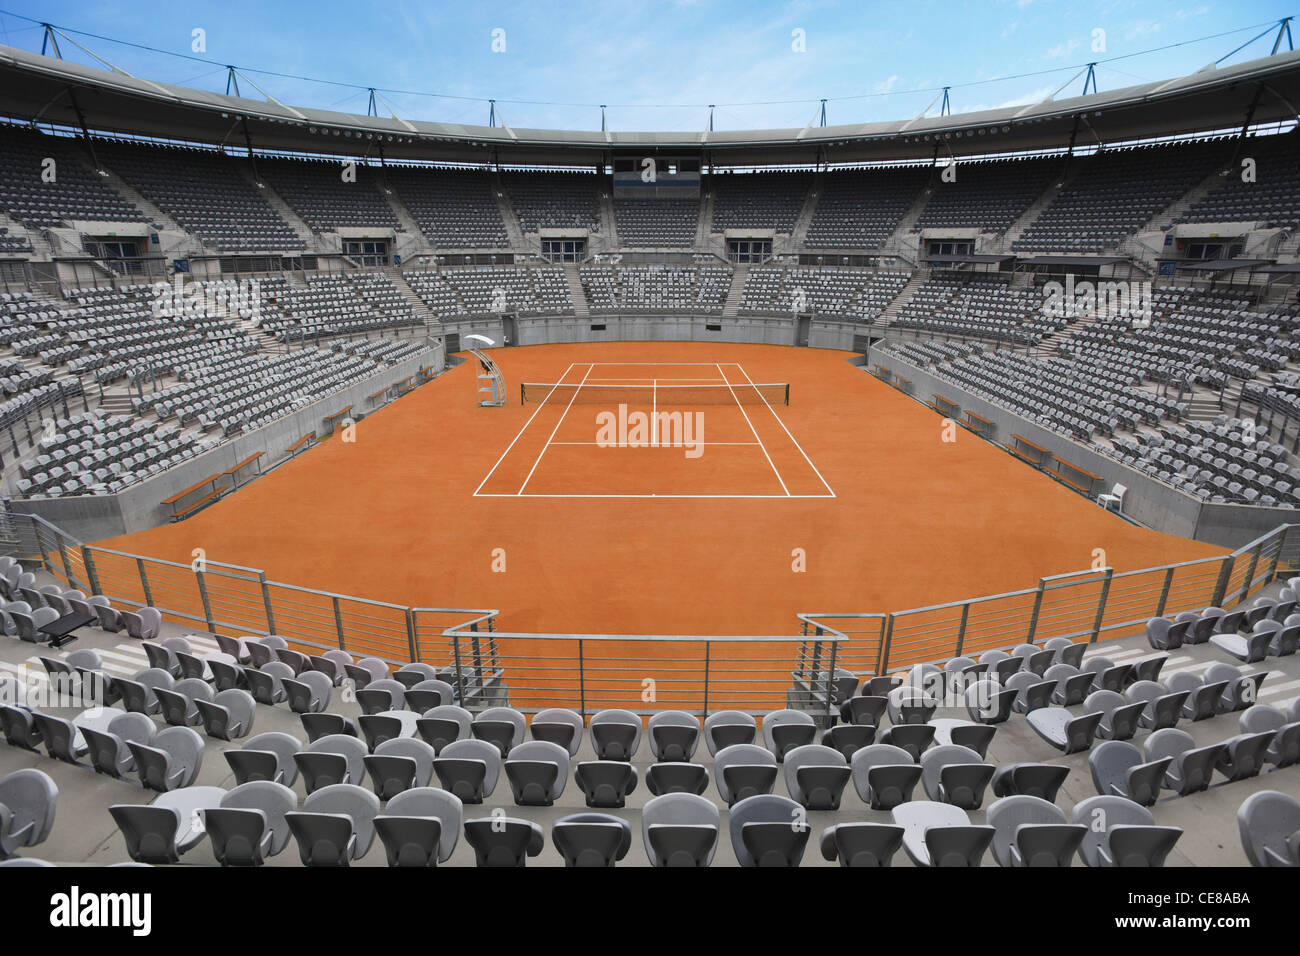 Vue générale du court de tennis en terre battue Banque D'Images